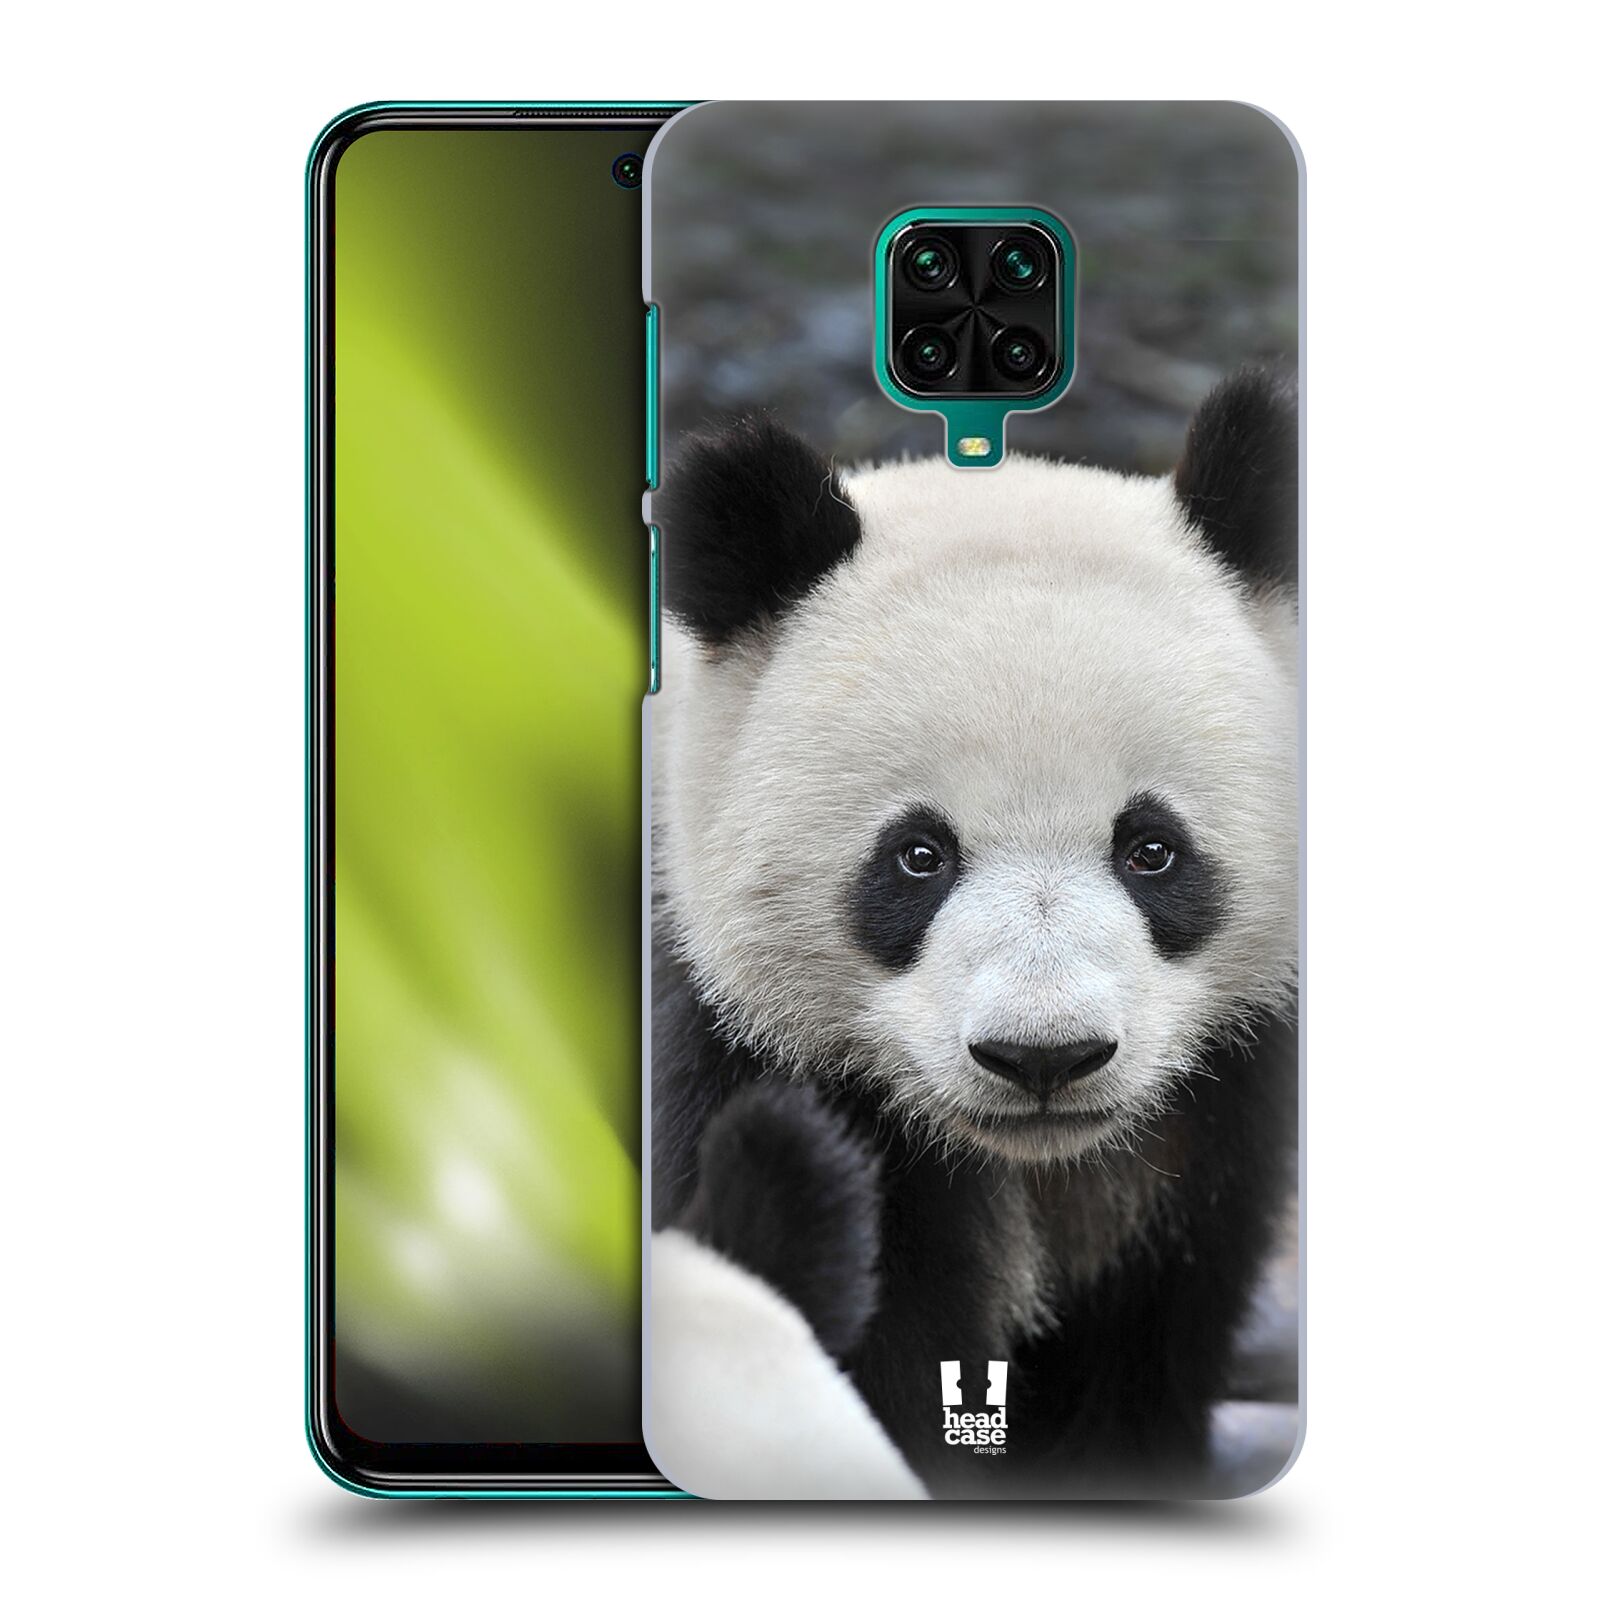 Zadní obal pro mobil Xiaomi Redmi Note 9 Pro - HEAD CASE - Svět zvířat medvěd panda